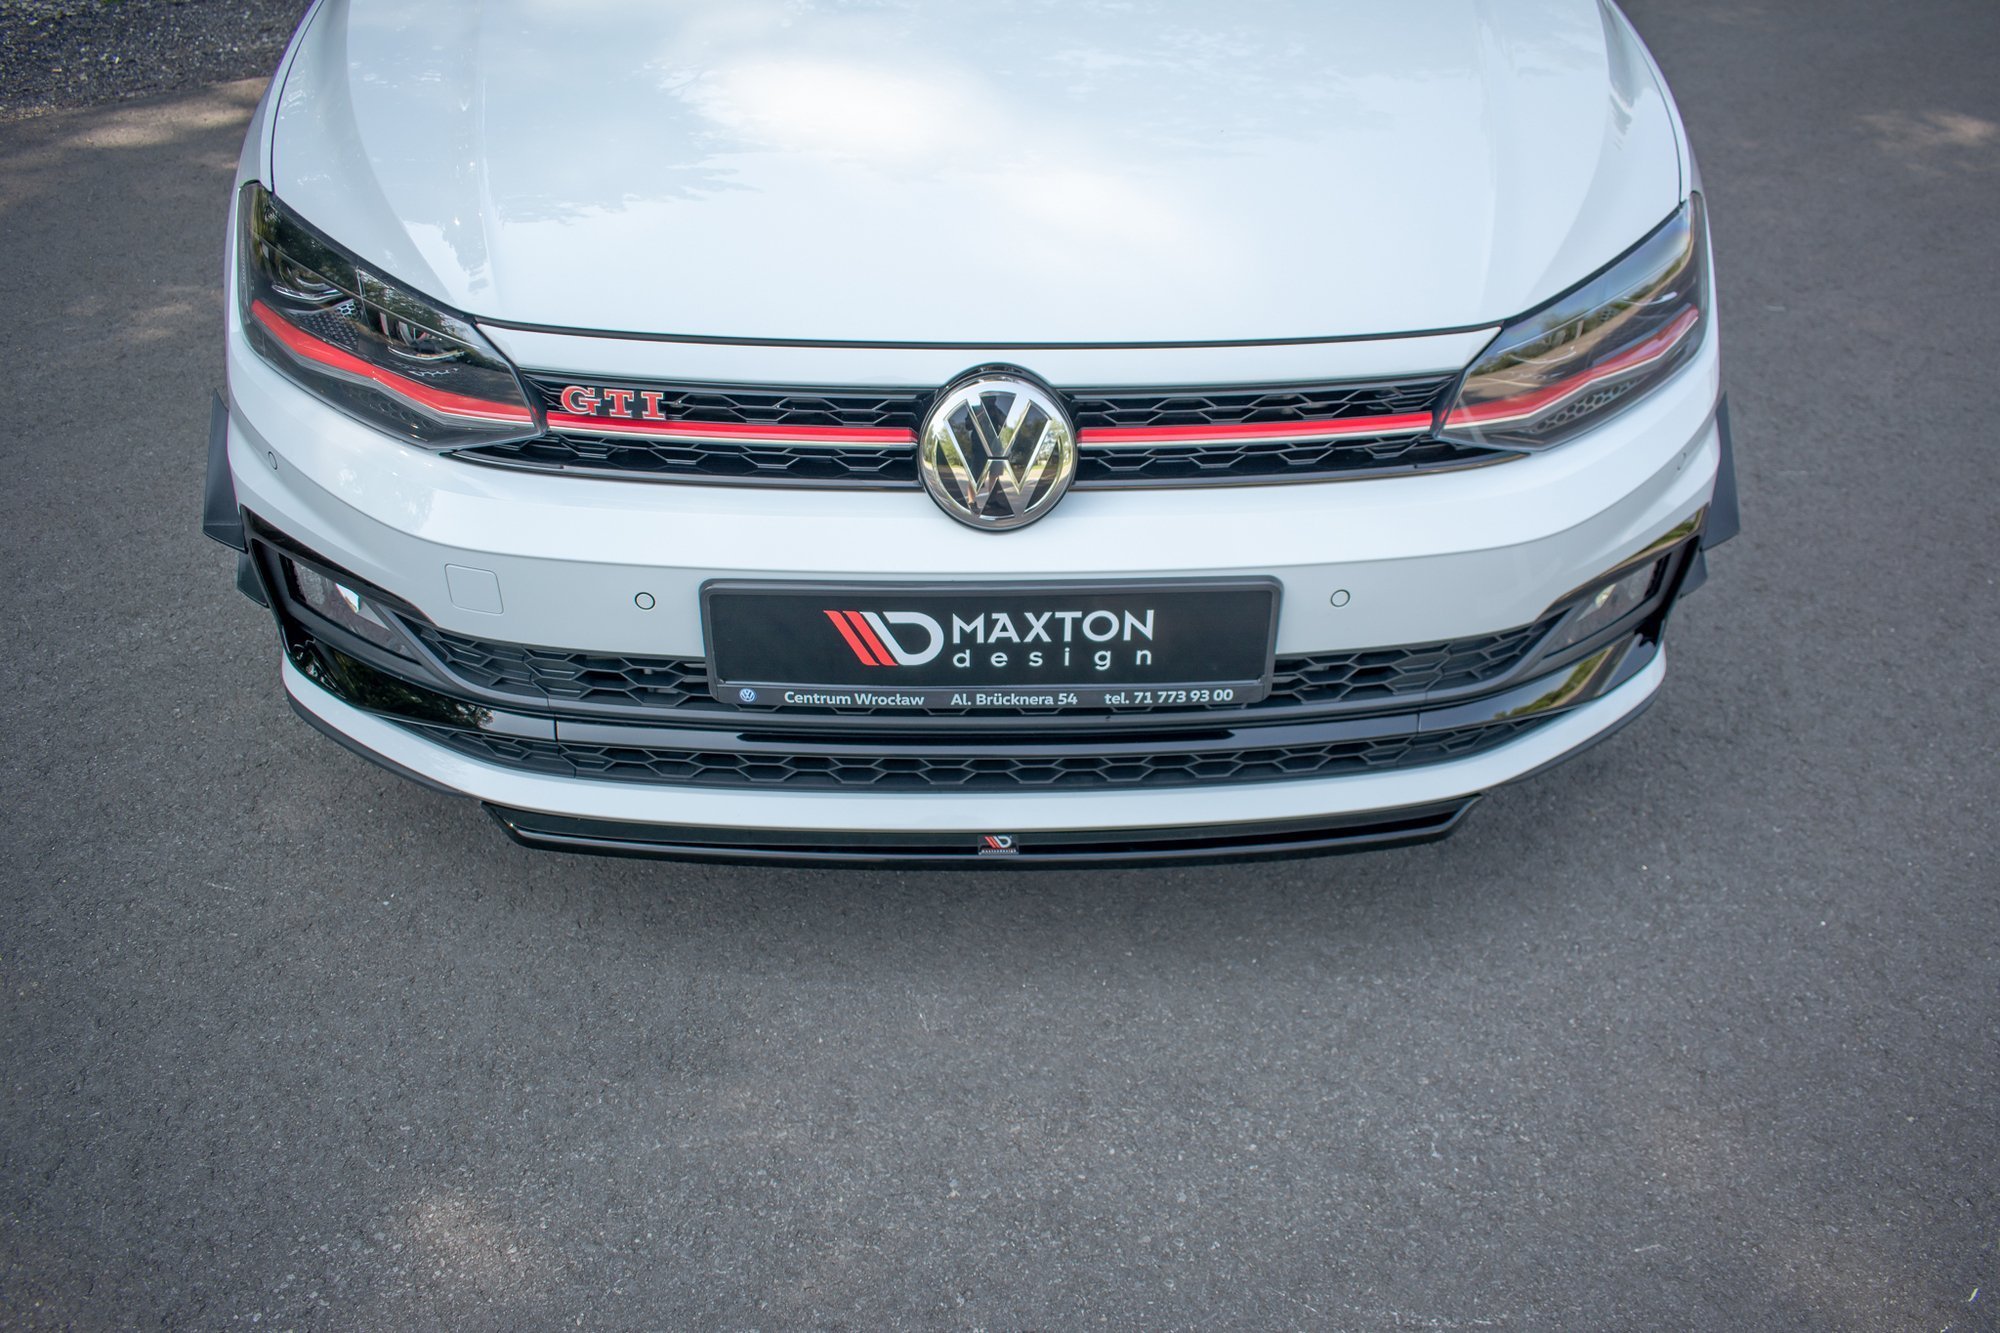 Maxton Design Front Ansatz V.4 für VW Polo GTI Mk6 schwarz Hochglanz